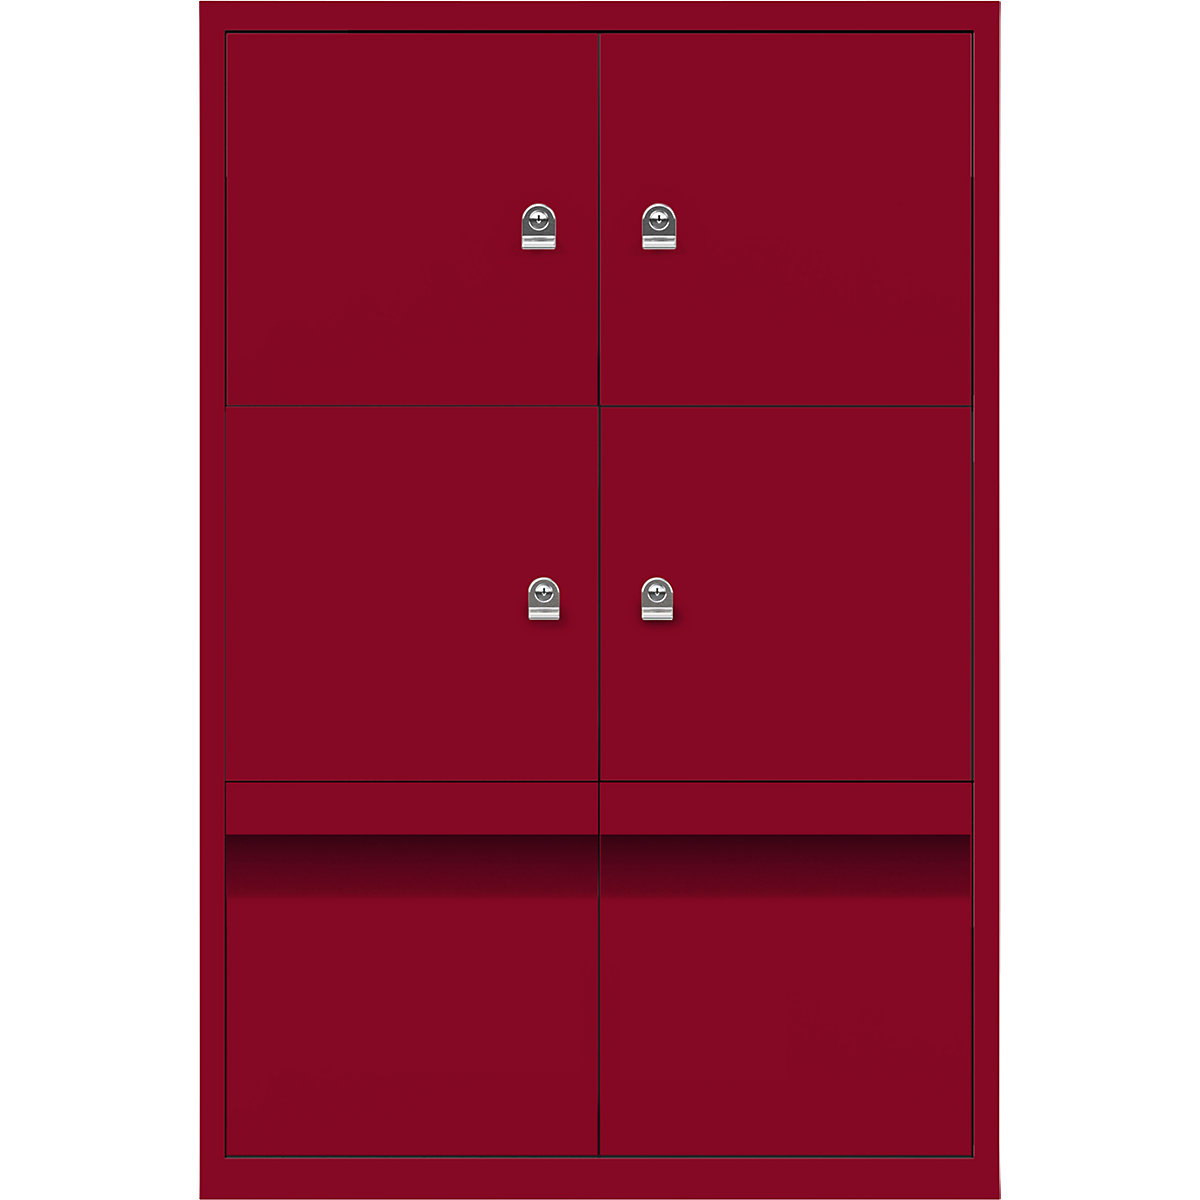 Armoire à casiers LateralFile™ – BISLEY, 4 casiers et 2 tiroirs hauteur 375 mm, rouge cardinal-11